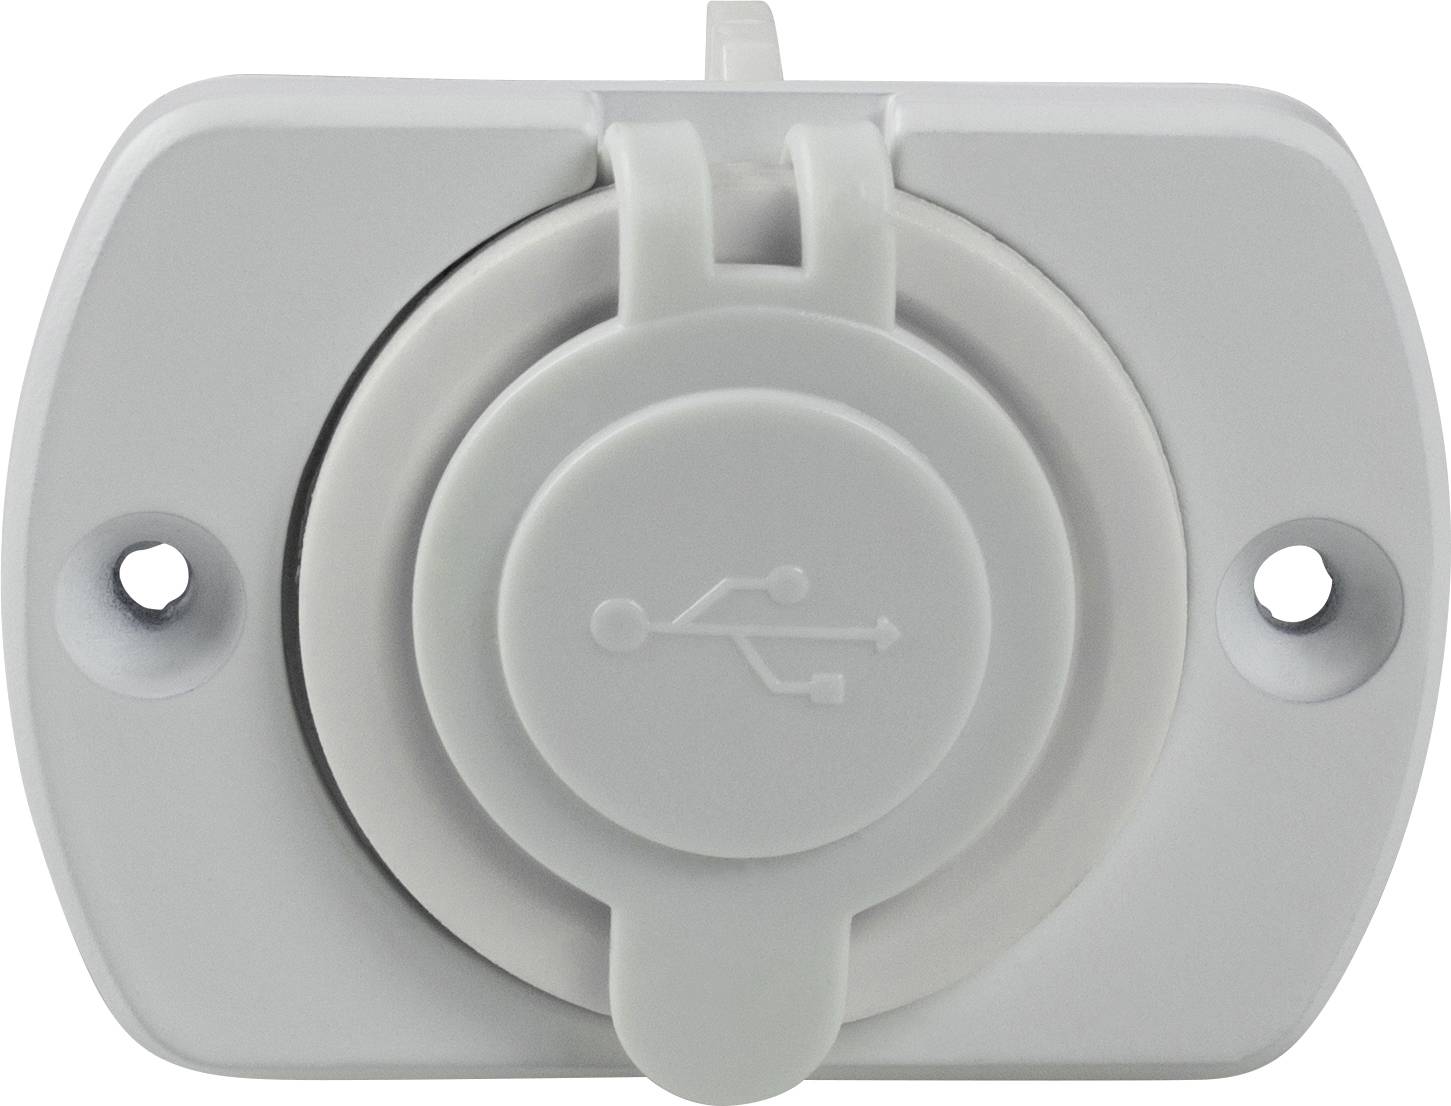 ProCar Prise de courant intégrée avec prise USB-C/A double + 2